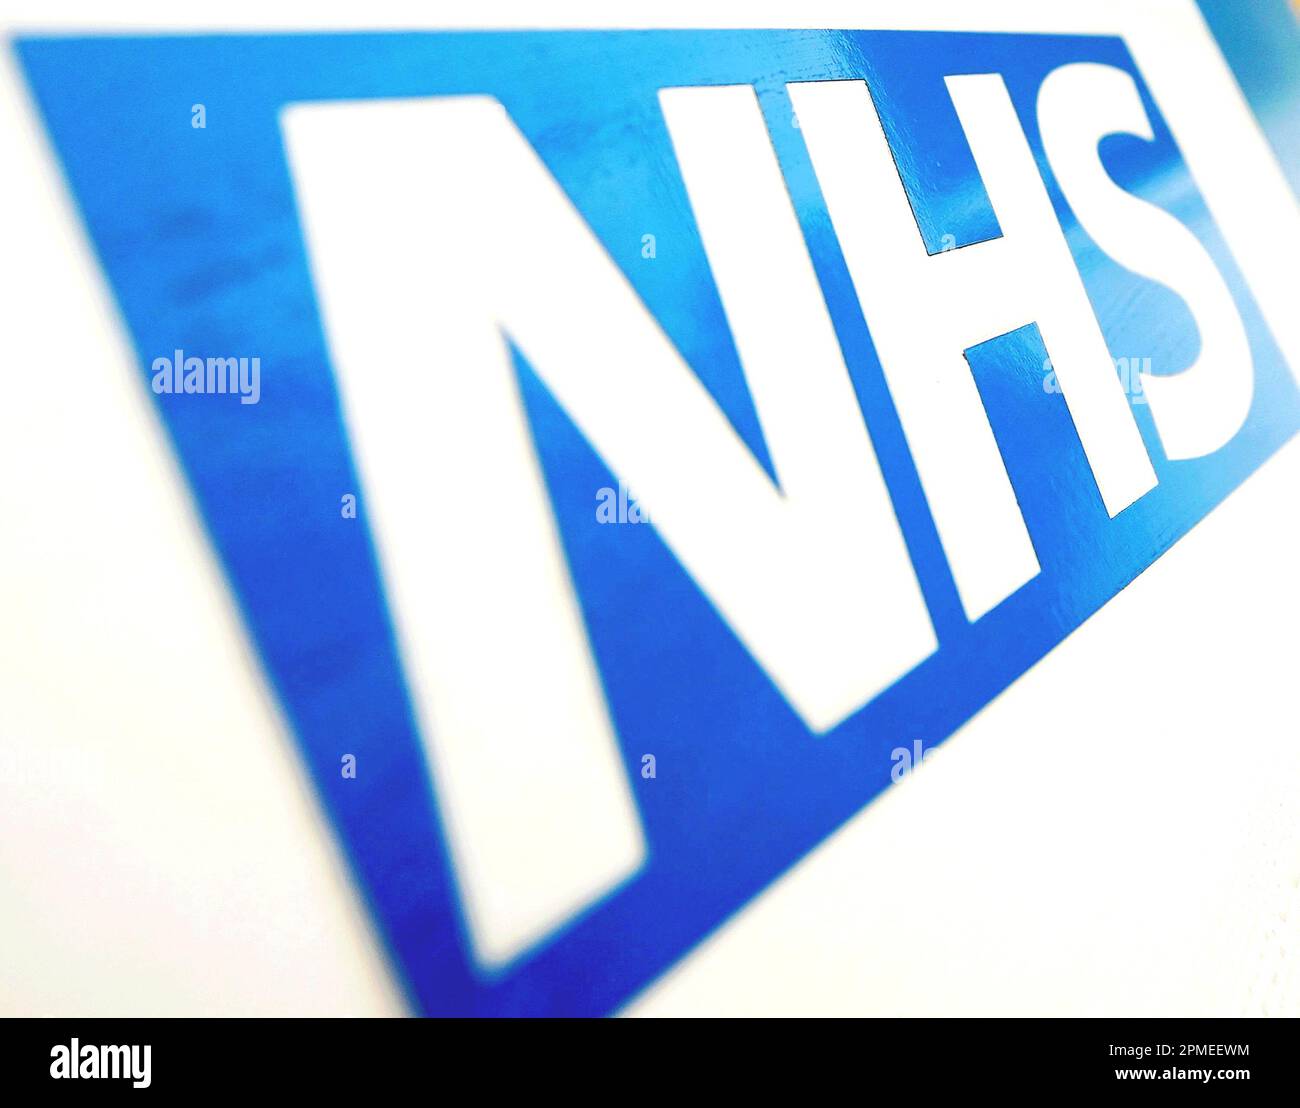 Photo du dossier datée du 06/11/10 du logo NHS, comme les demandeurs d'asile en Angleterre risquent de manquer des services de santé de base parce qu'ils ont un accès limité à Internet, a averti un rapport. Banque D'Images